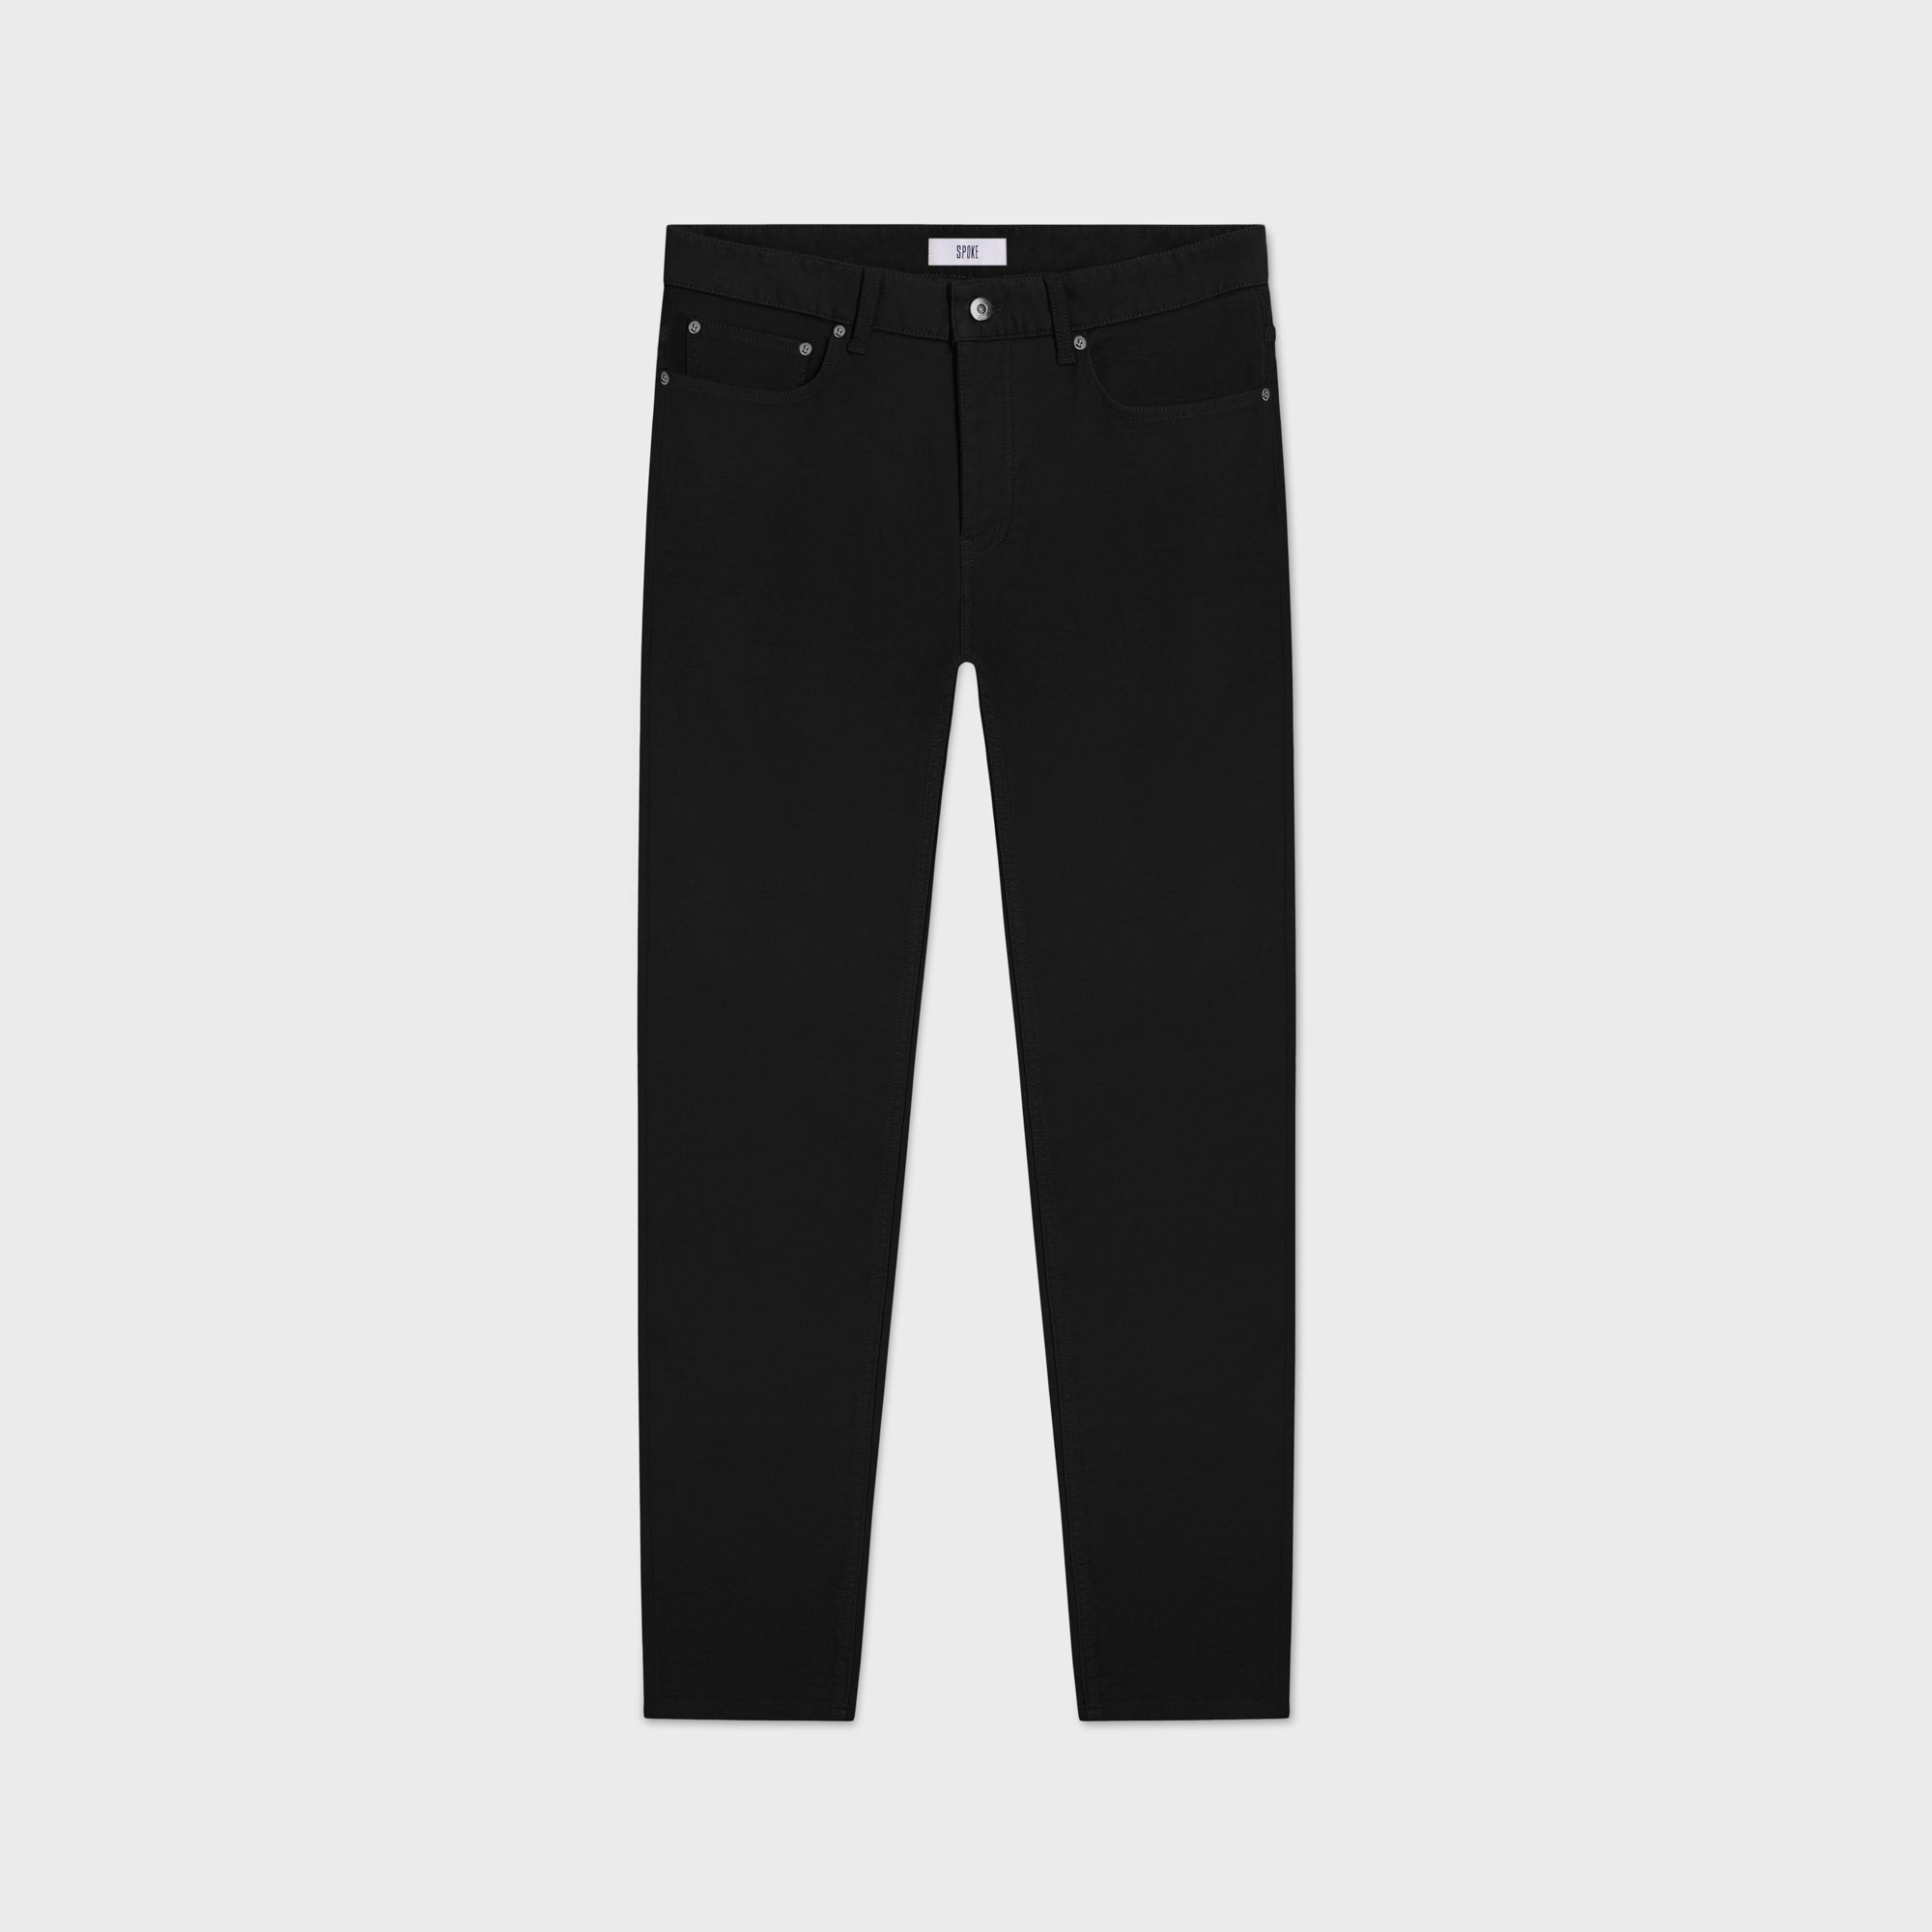 SPOKE 12oz Original Denim - Infinity Black Custom Fit Jeans - SPOKE